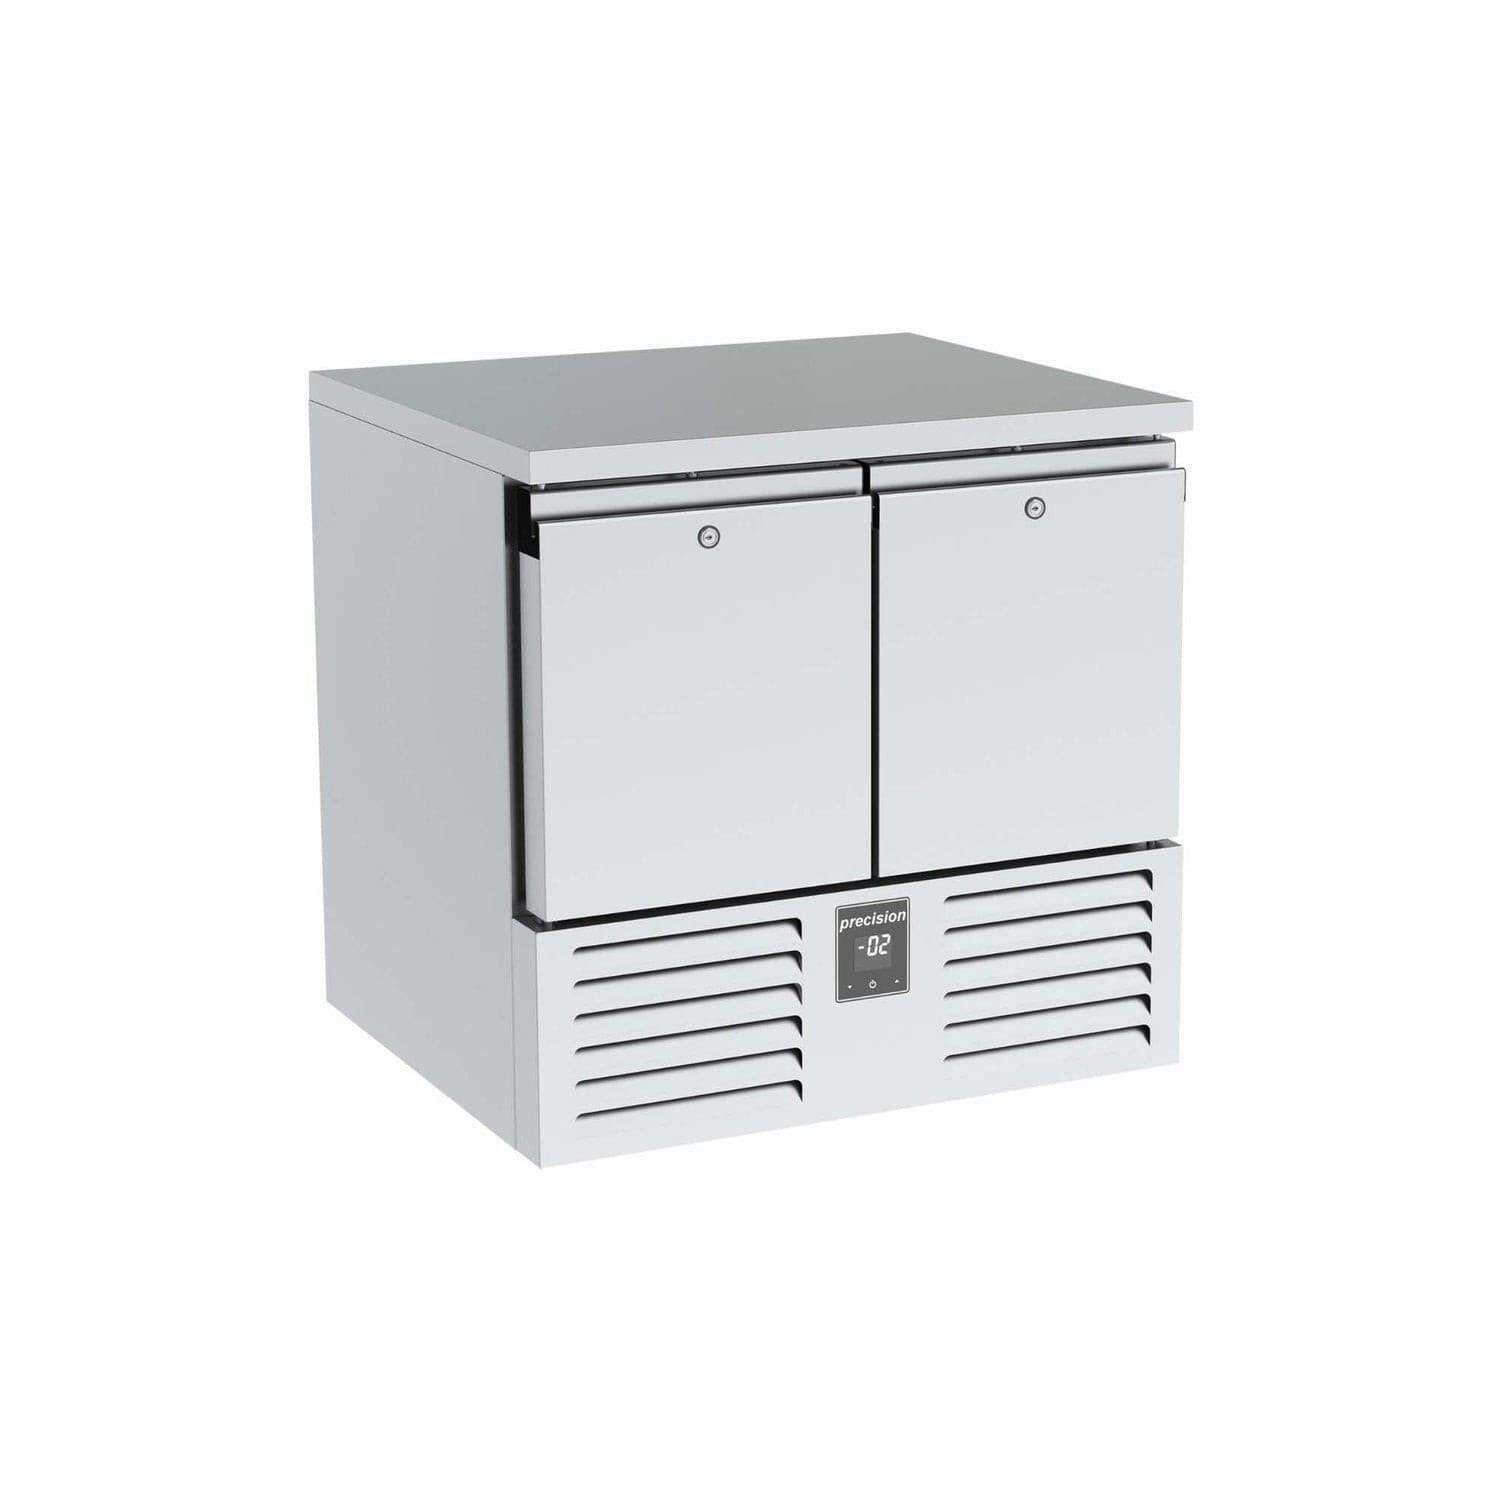 Precision LSS 300 Double Door Compact Undercounter Freezer 96 Litres